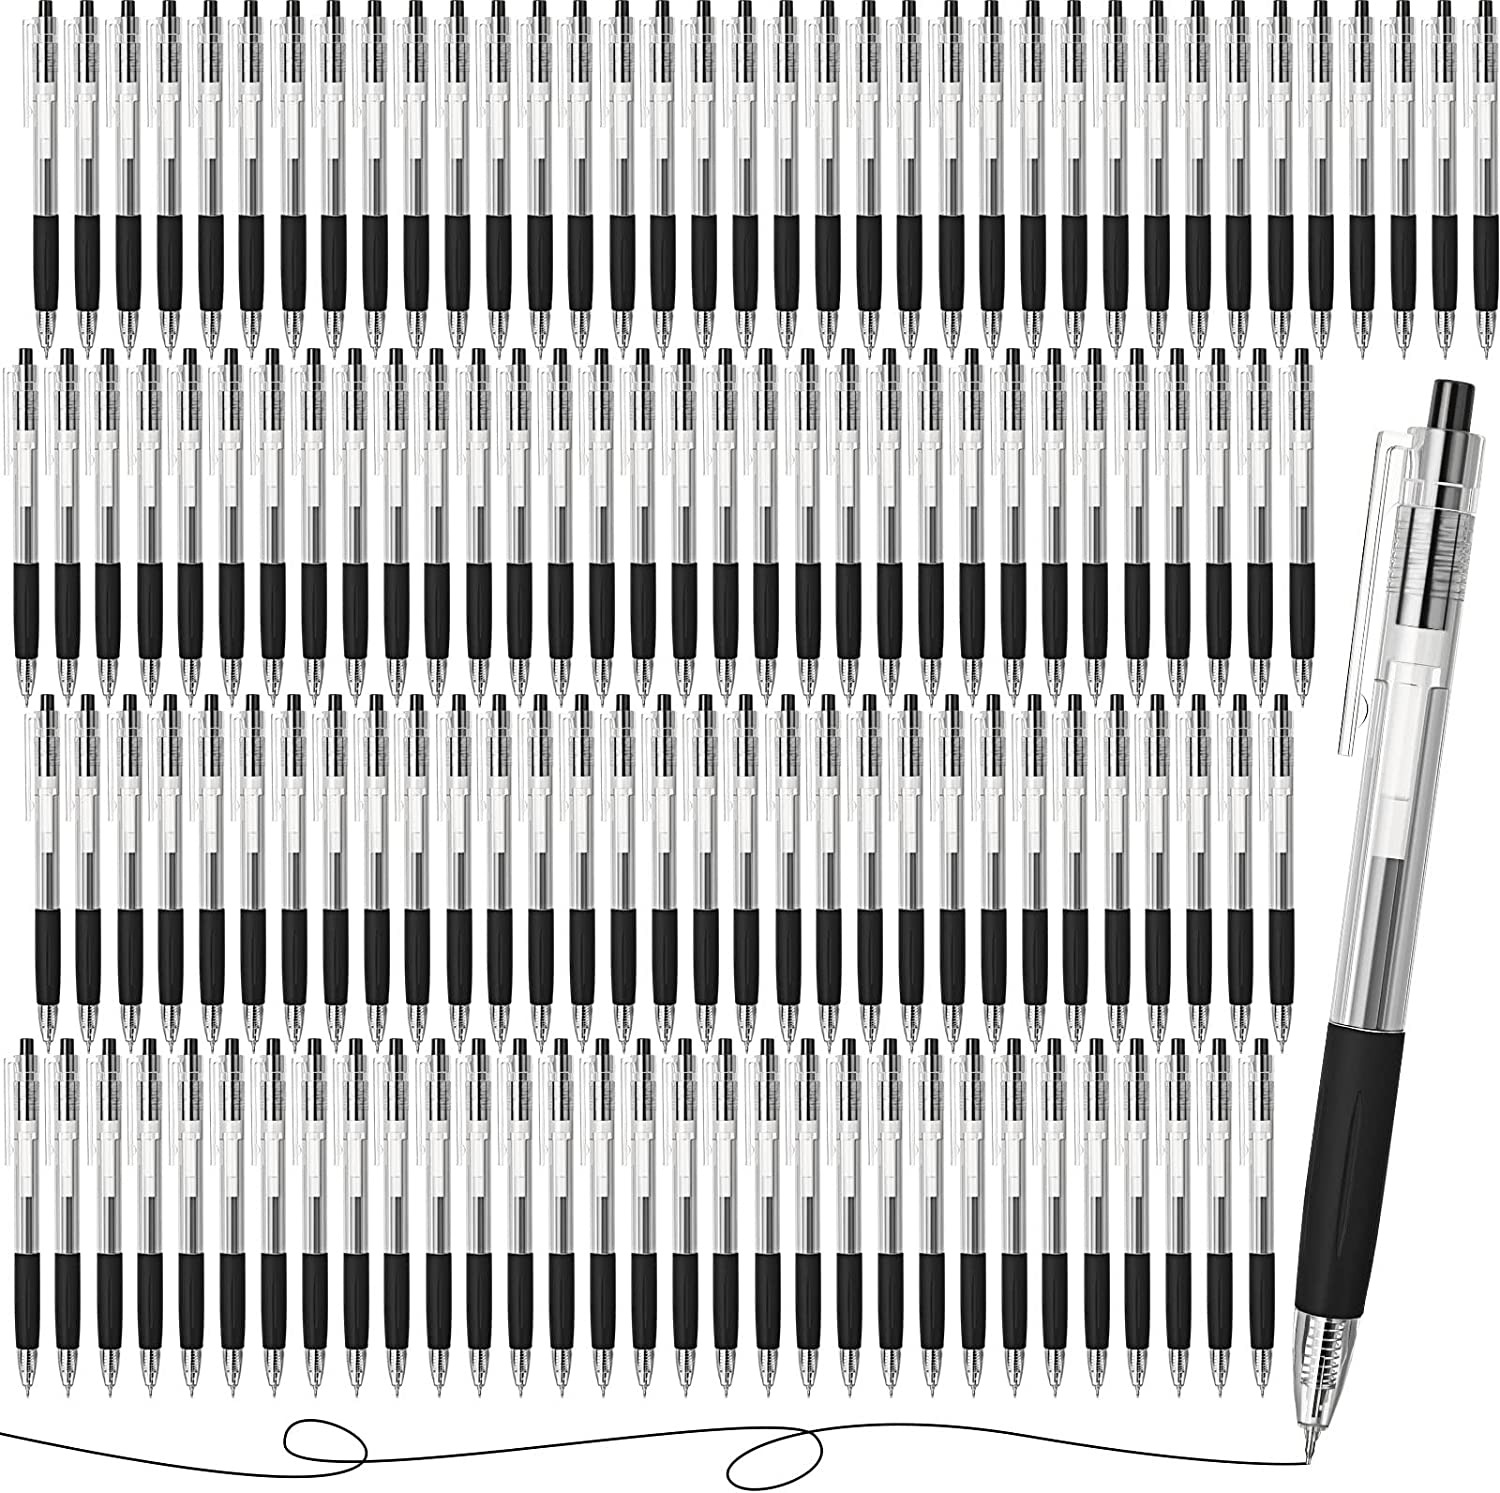 400 Count Pens Bulk Black Retractable Ballpoint Pens Ballpoint Ink Pens in Bulk